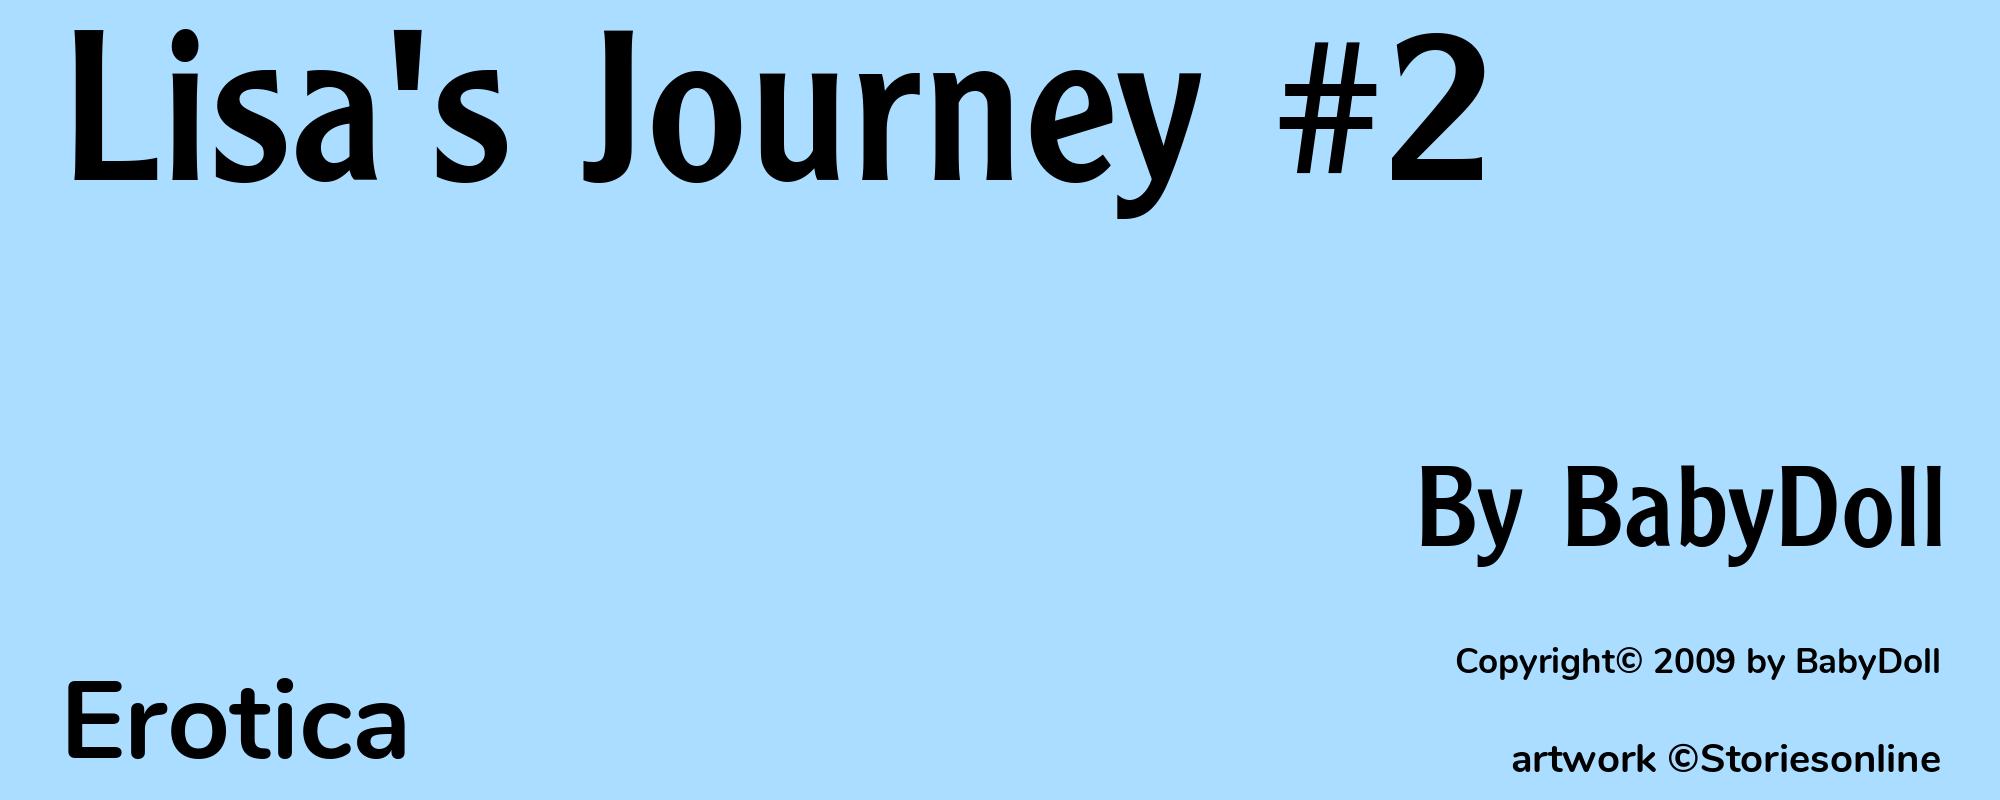 Lisa's Journey #2 - Cover